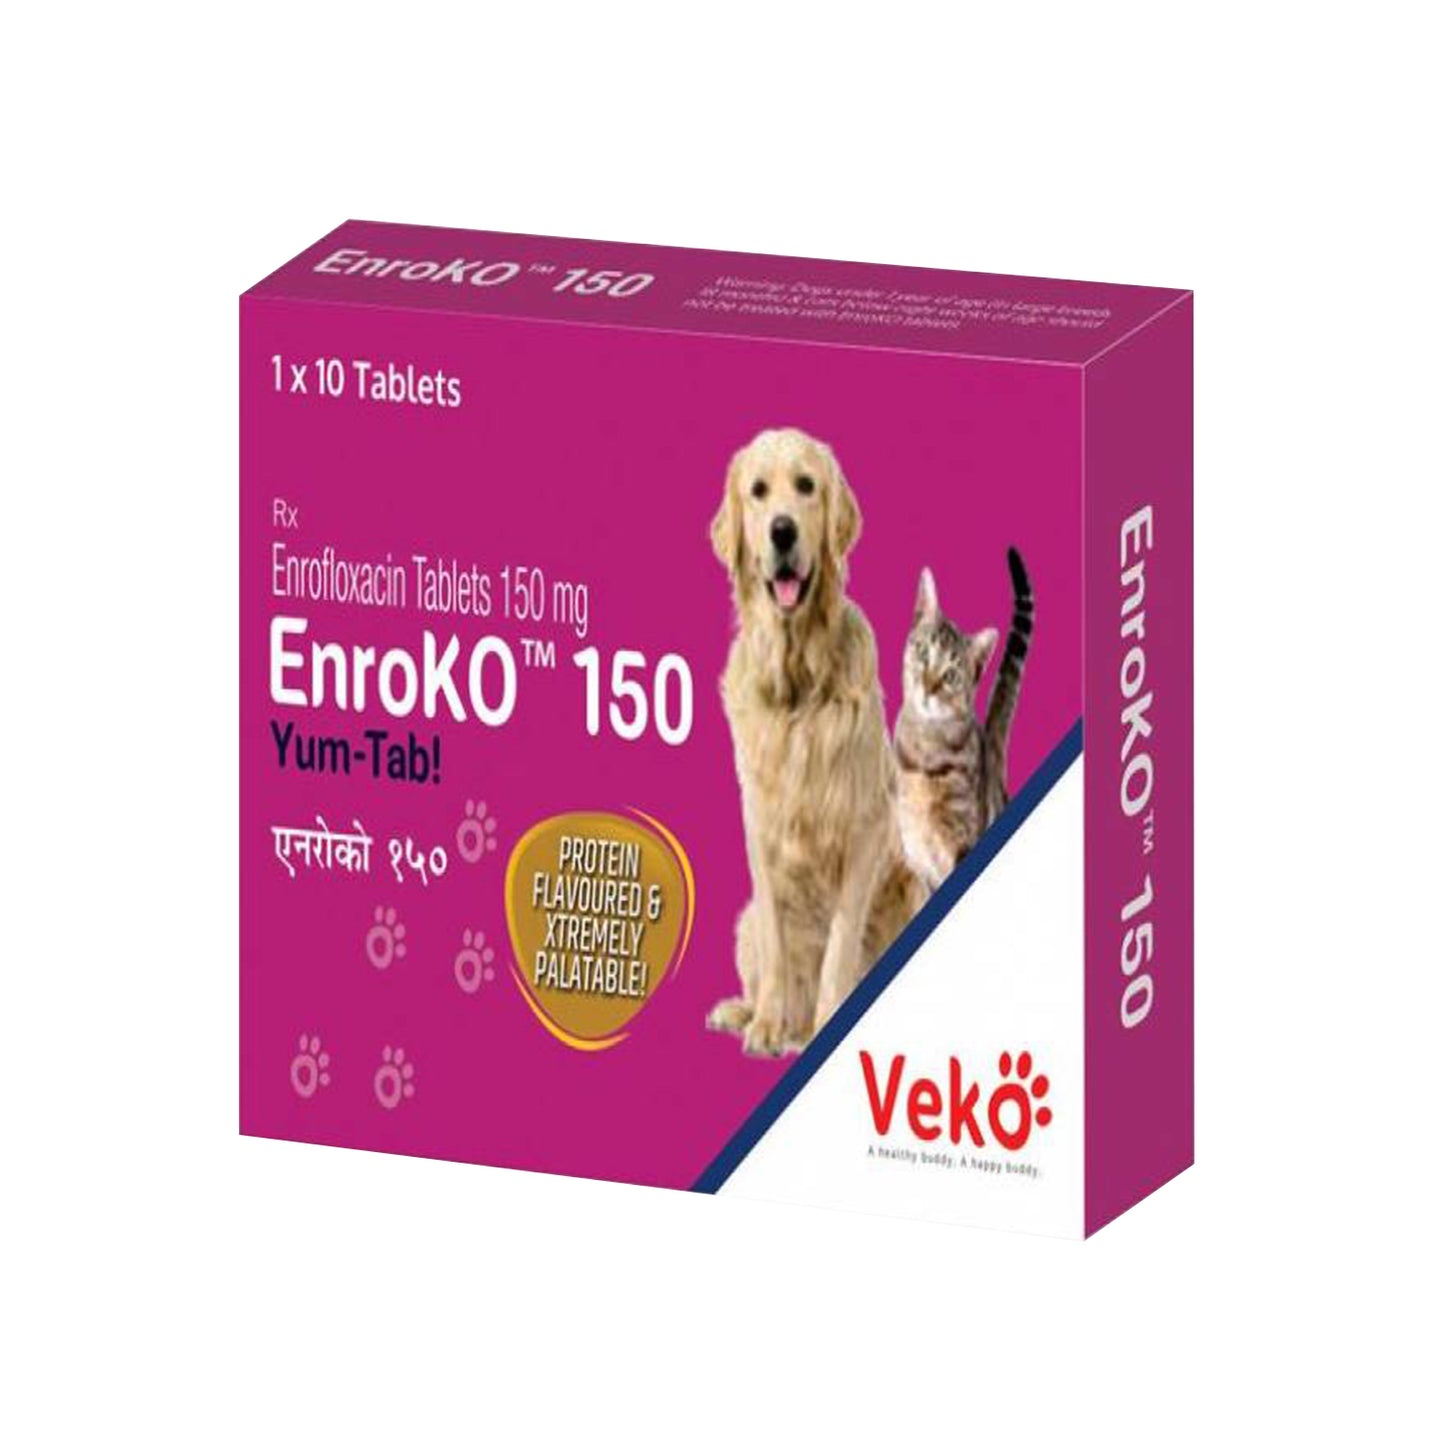 Veko Care - Enroko Tablets